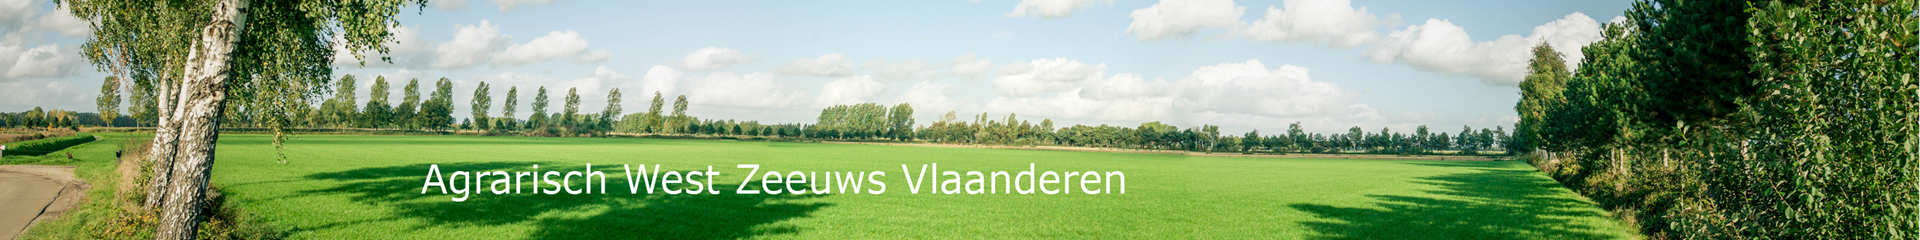 Afdelingsbanner website - Agrarisch West Zeeuws Vlaanderen